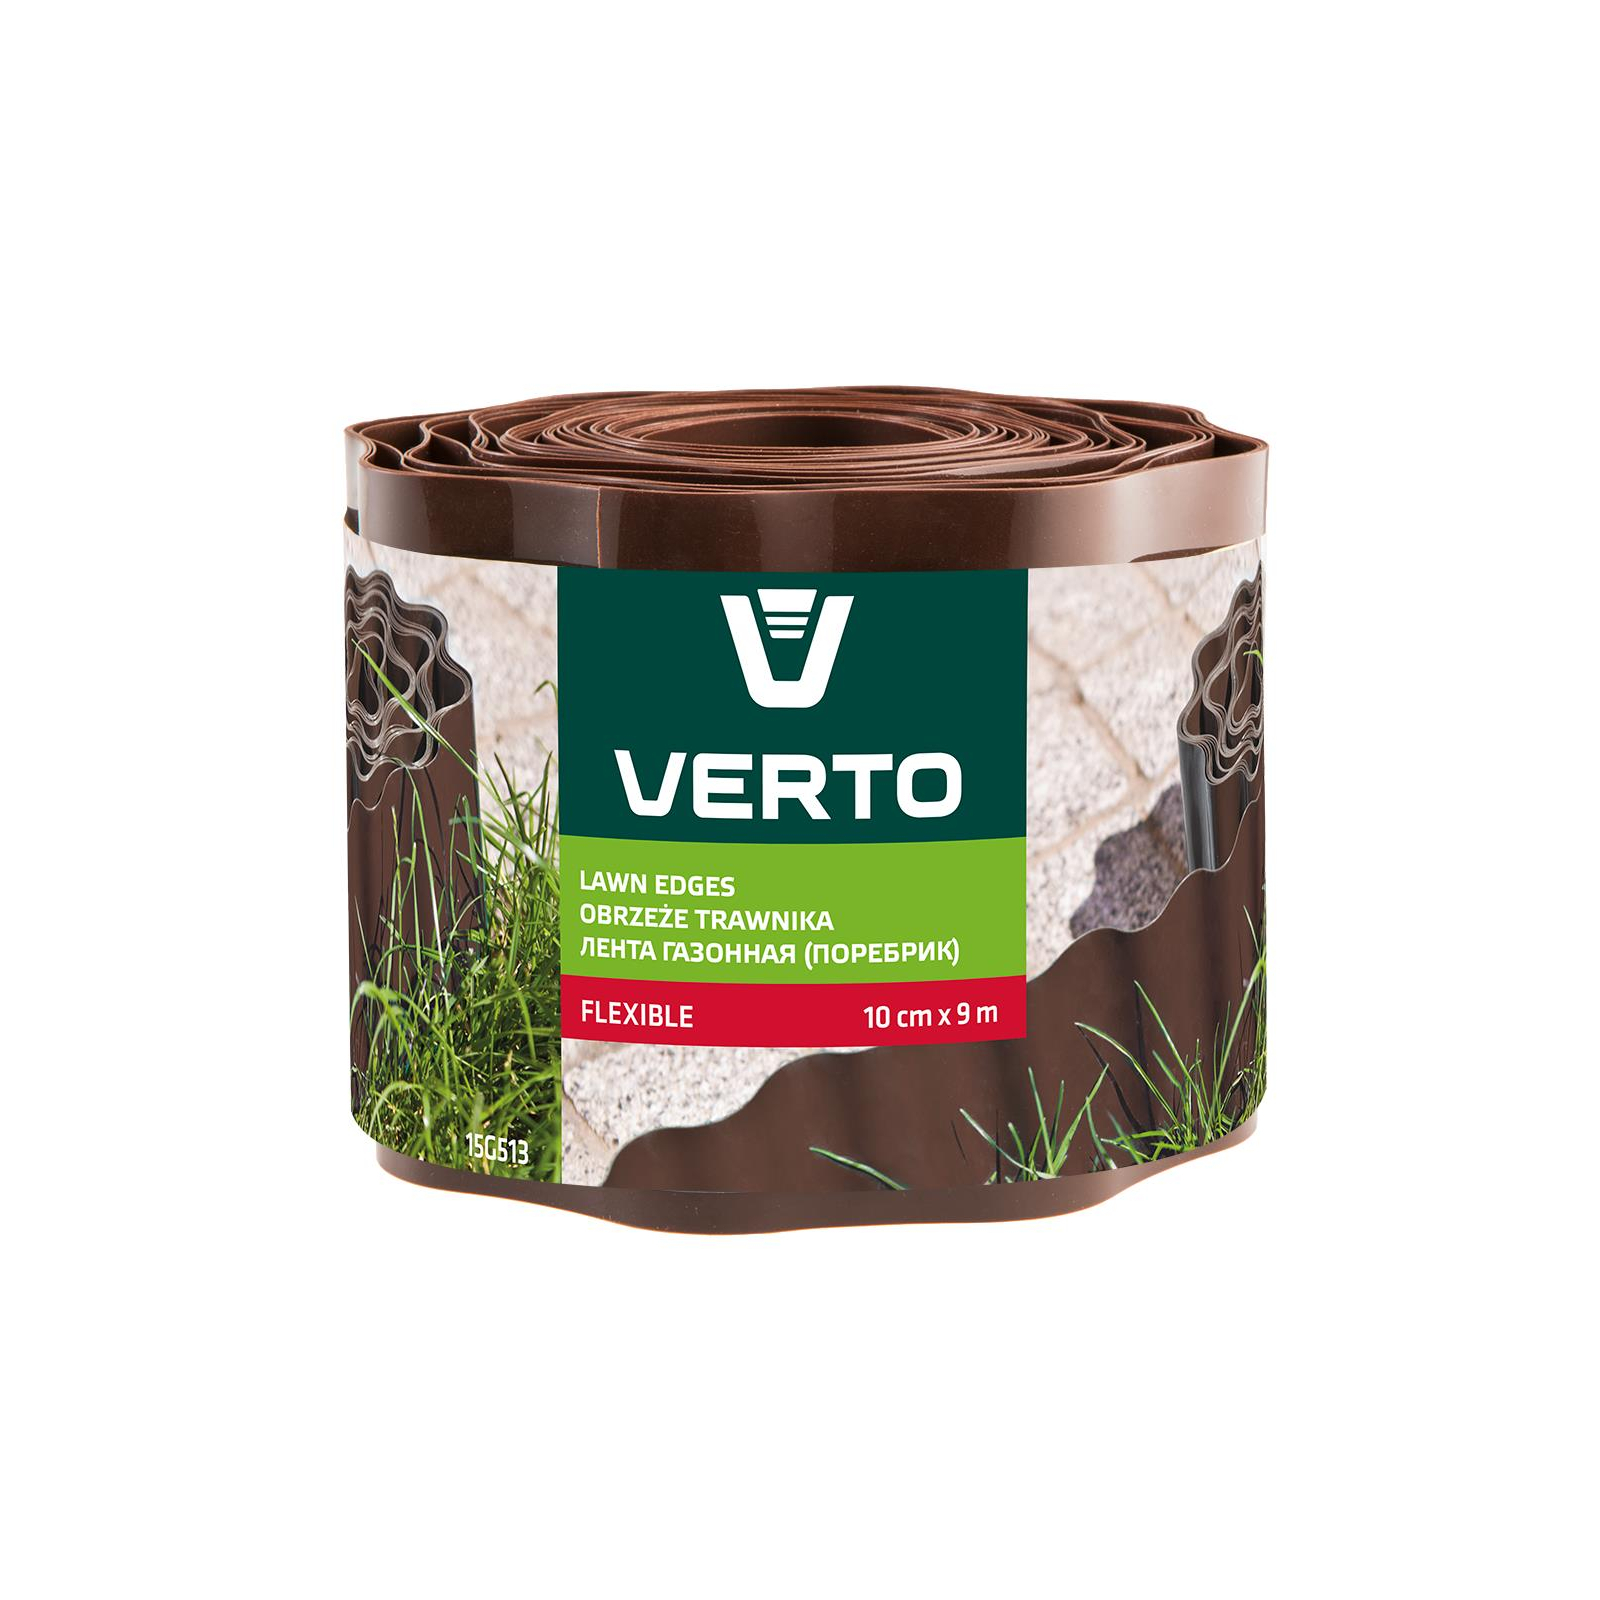 Садовое ограждение Verto лента газонная, бордюрная, волнистая, 10смх9м, коричневая (15G513)